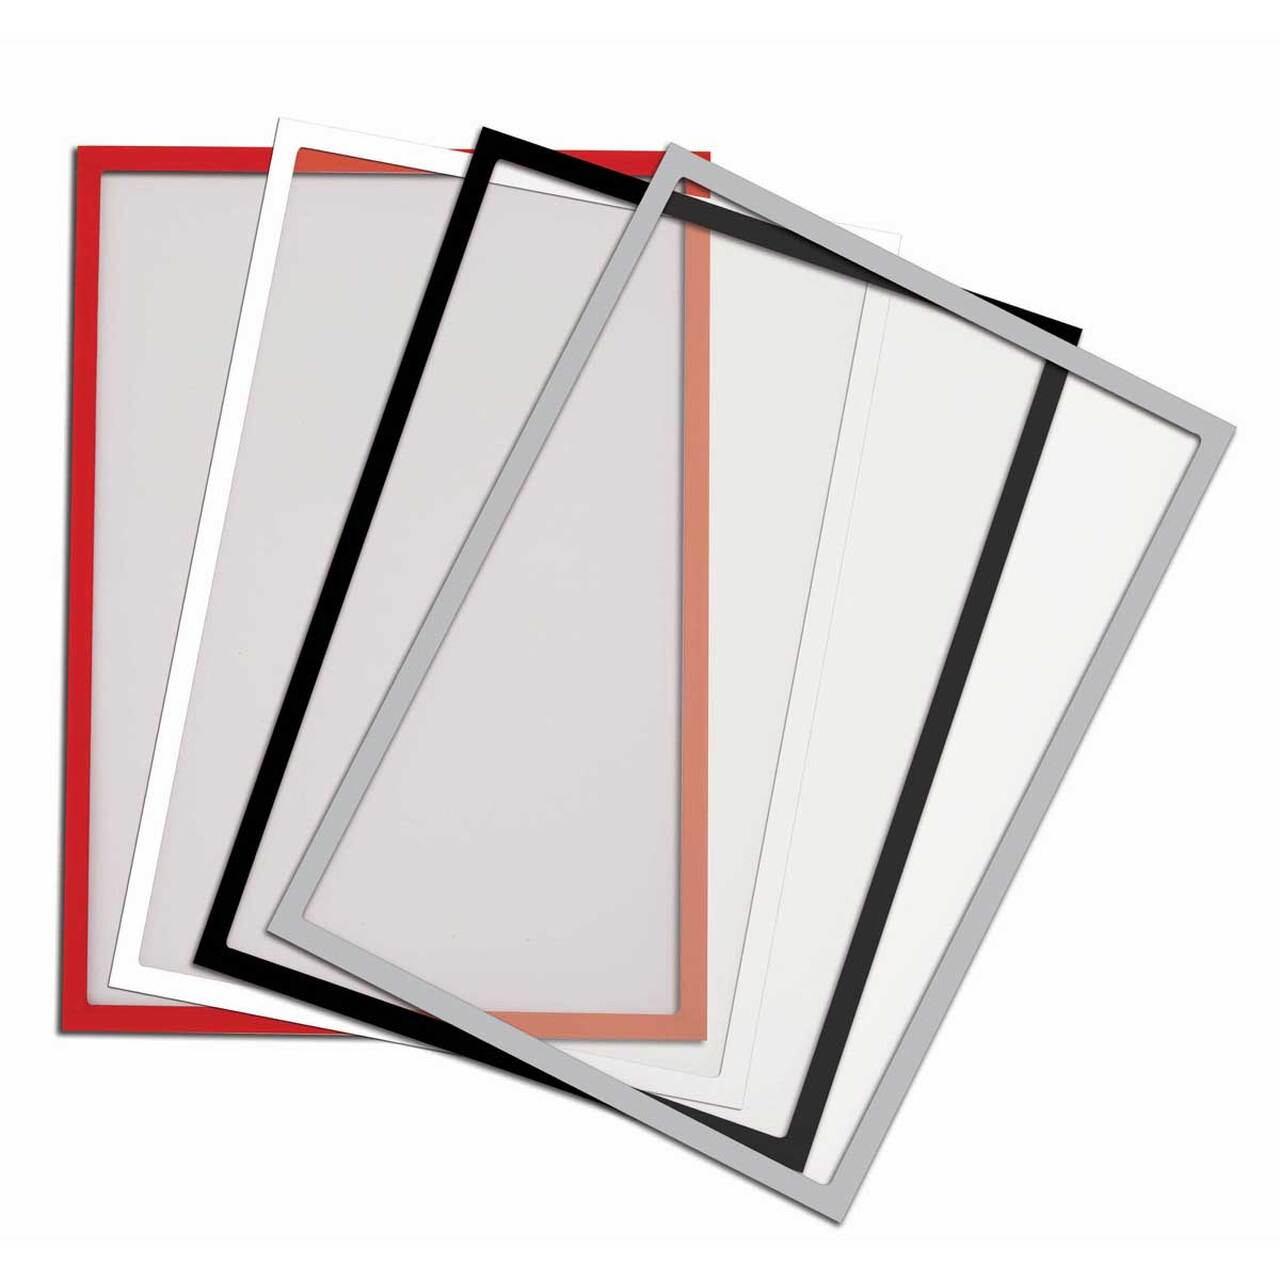  Stand broșuri din metal, 4 buzunare pentru broșuri format 100x210mm și 1 folie magnetică A4.